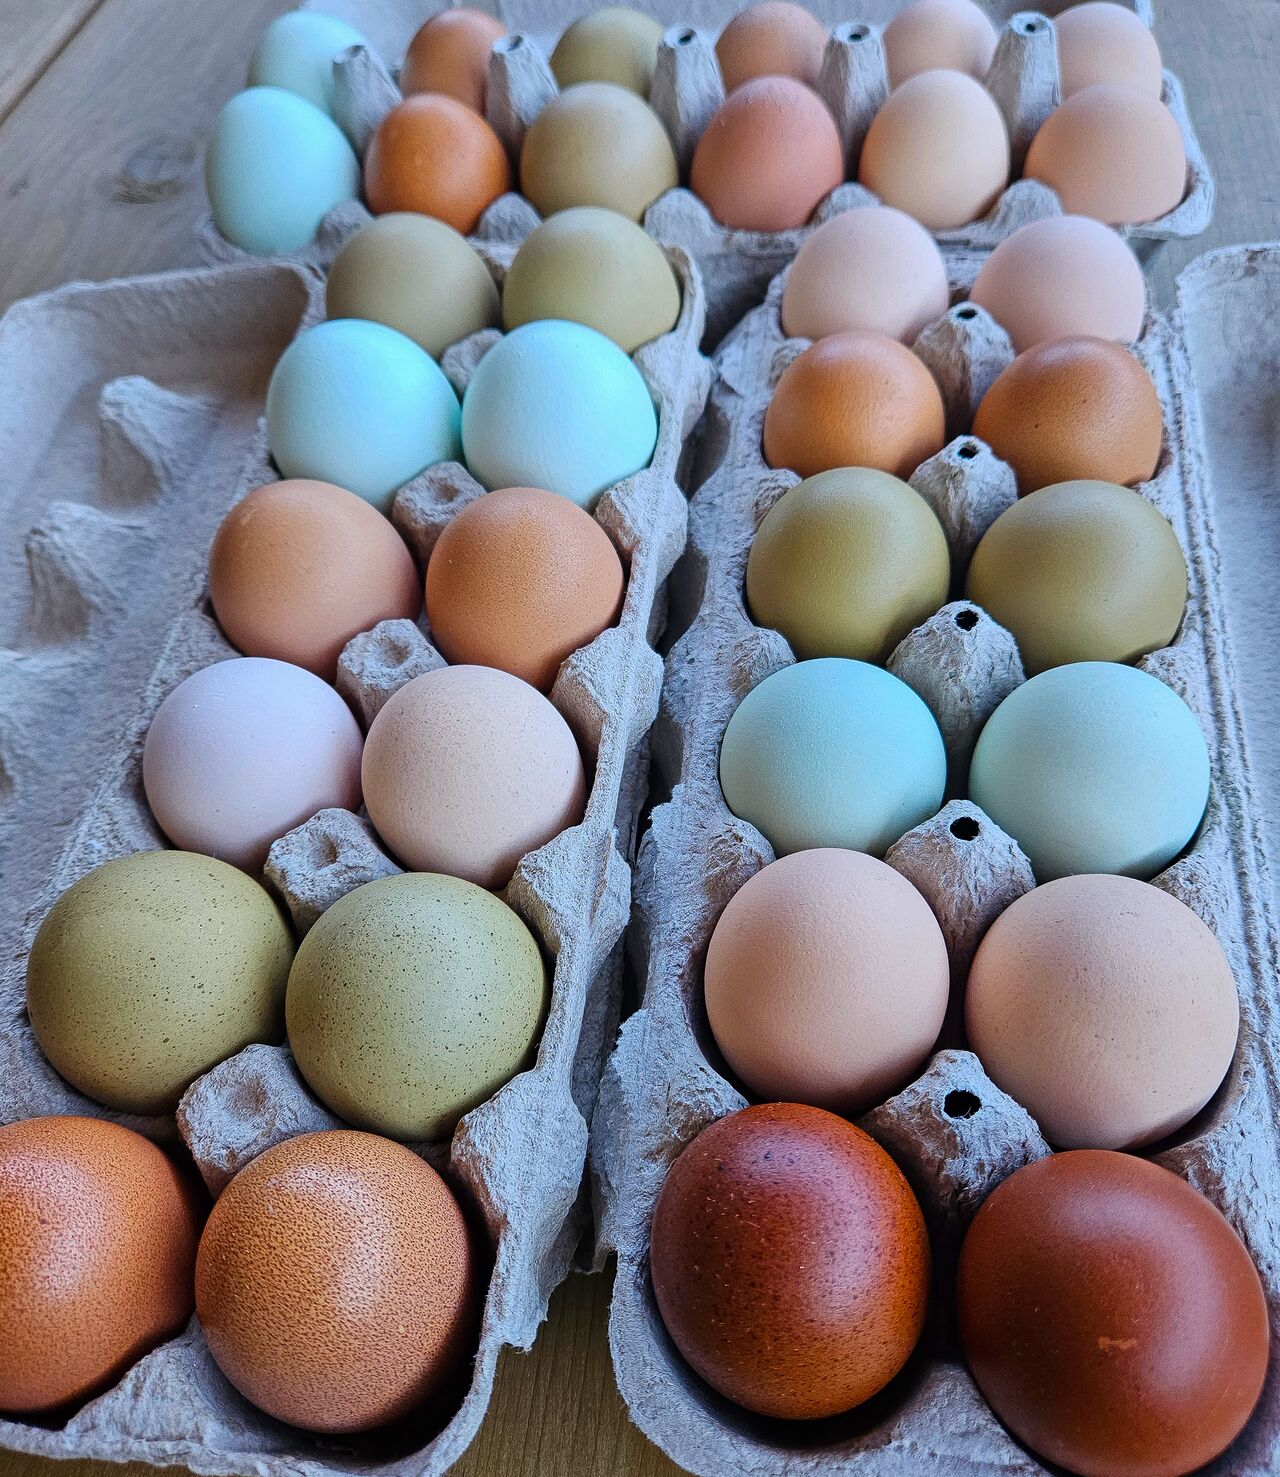 Rainbow eggs!